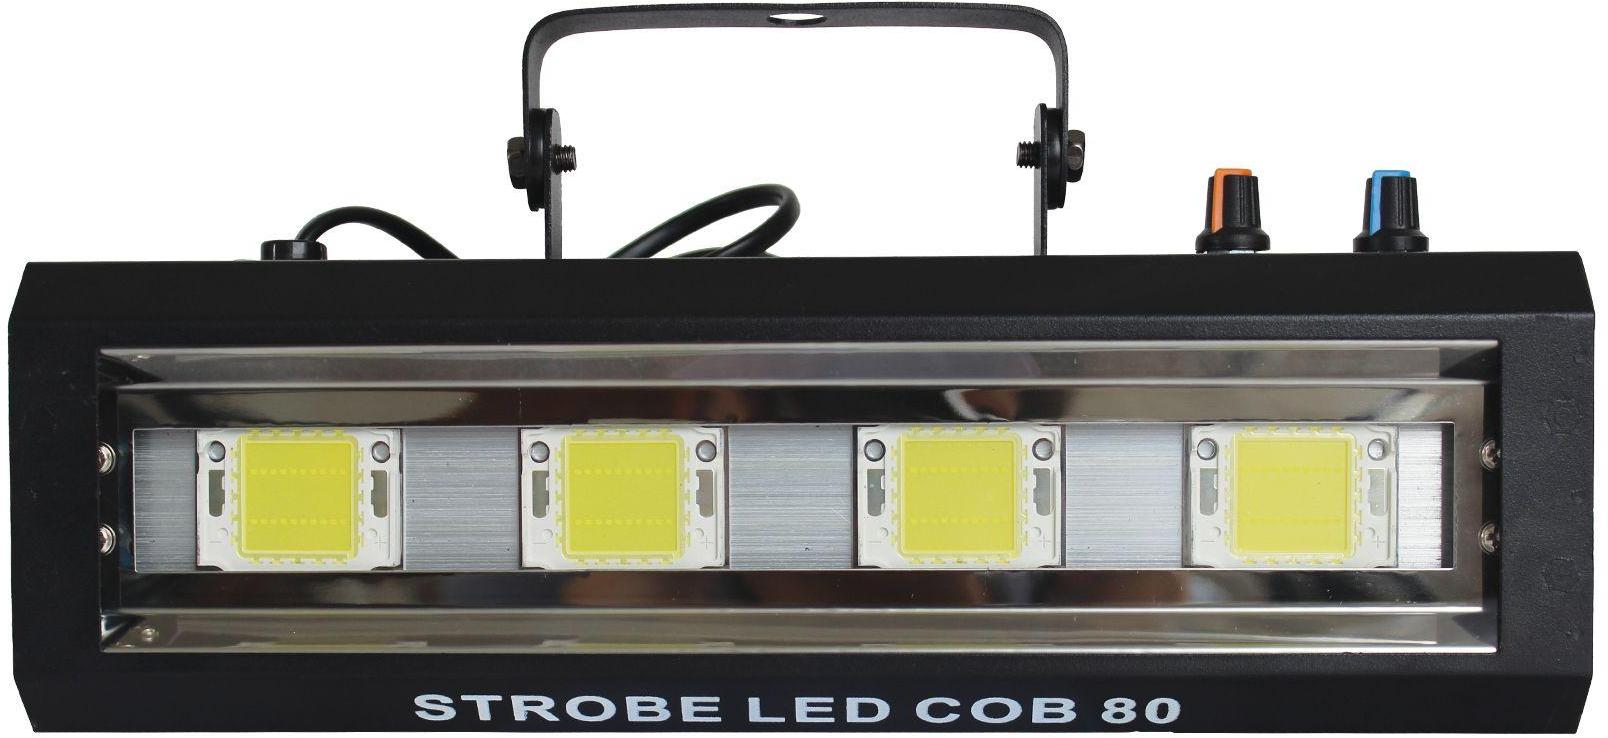 Stroboscope a led Power lighting Strobe Led Cob 80